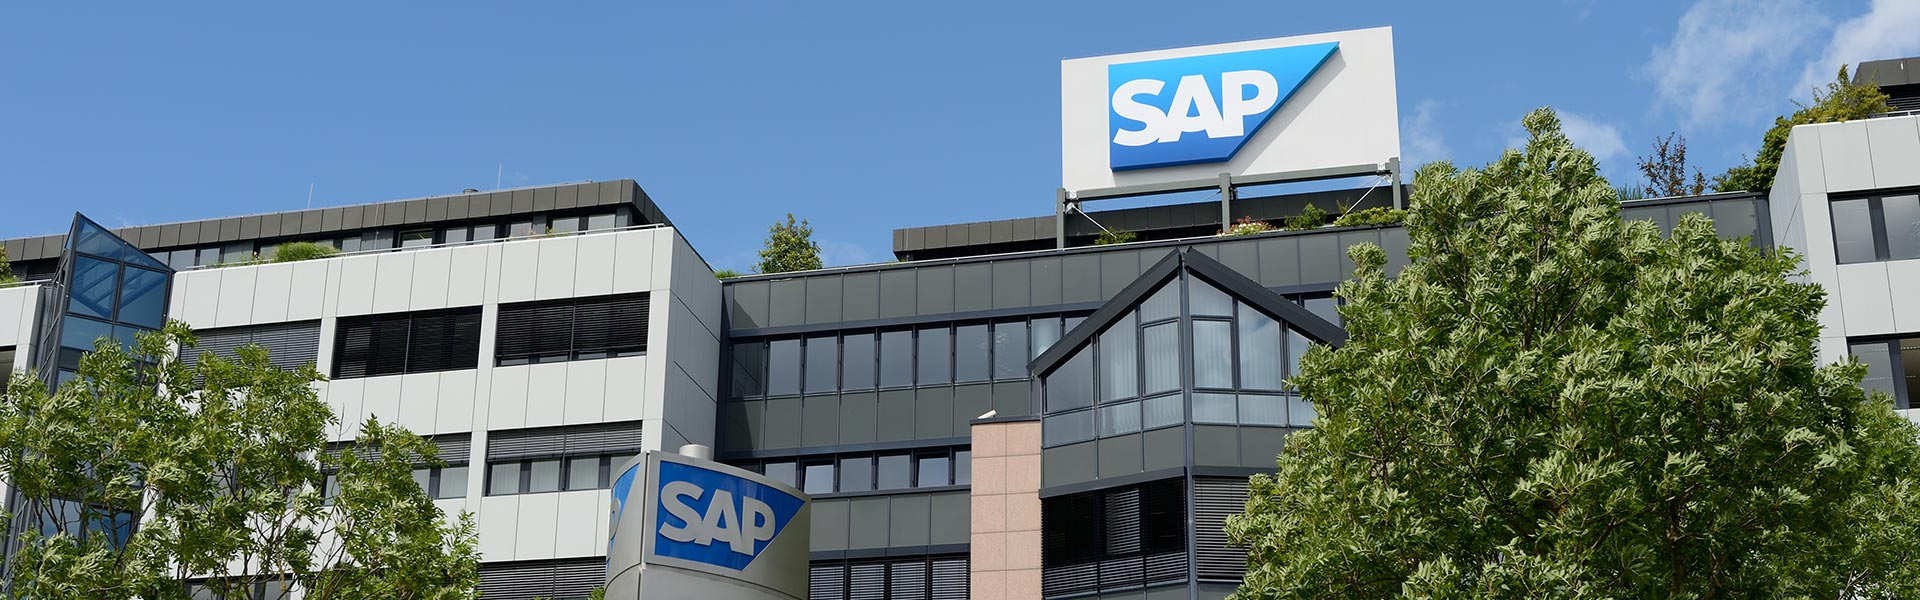 SAP España apuesta por el talento interno y anuncia cambios en su cúpula directiva